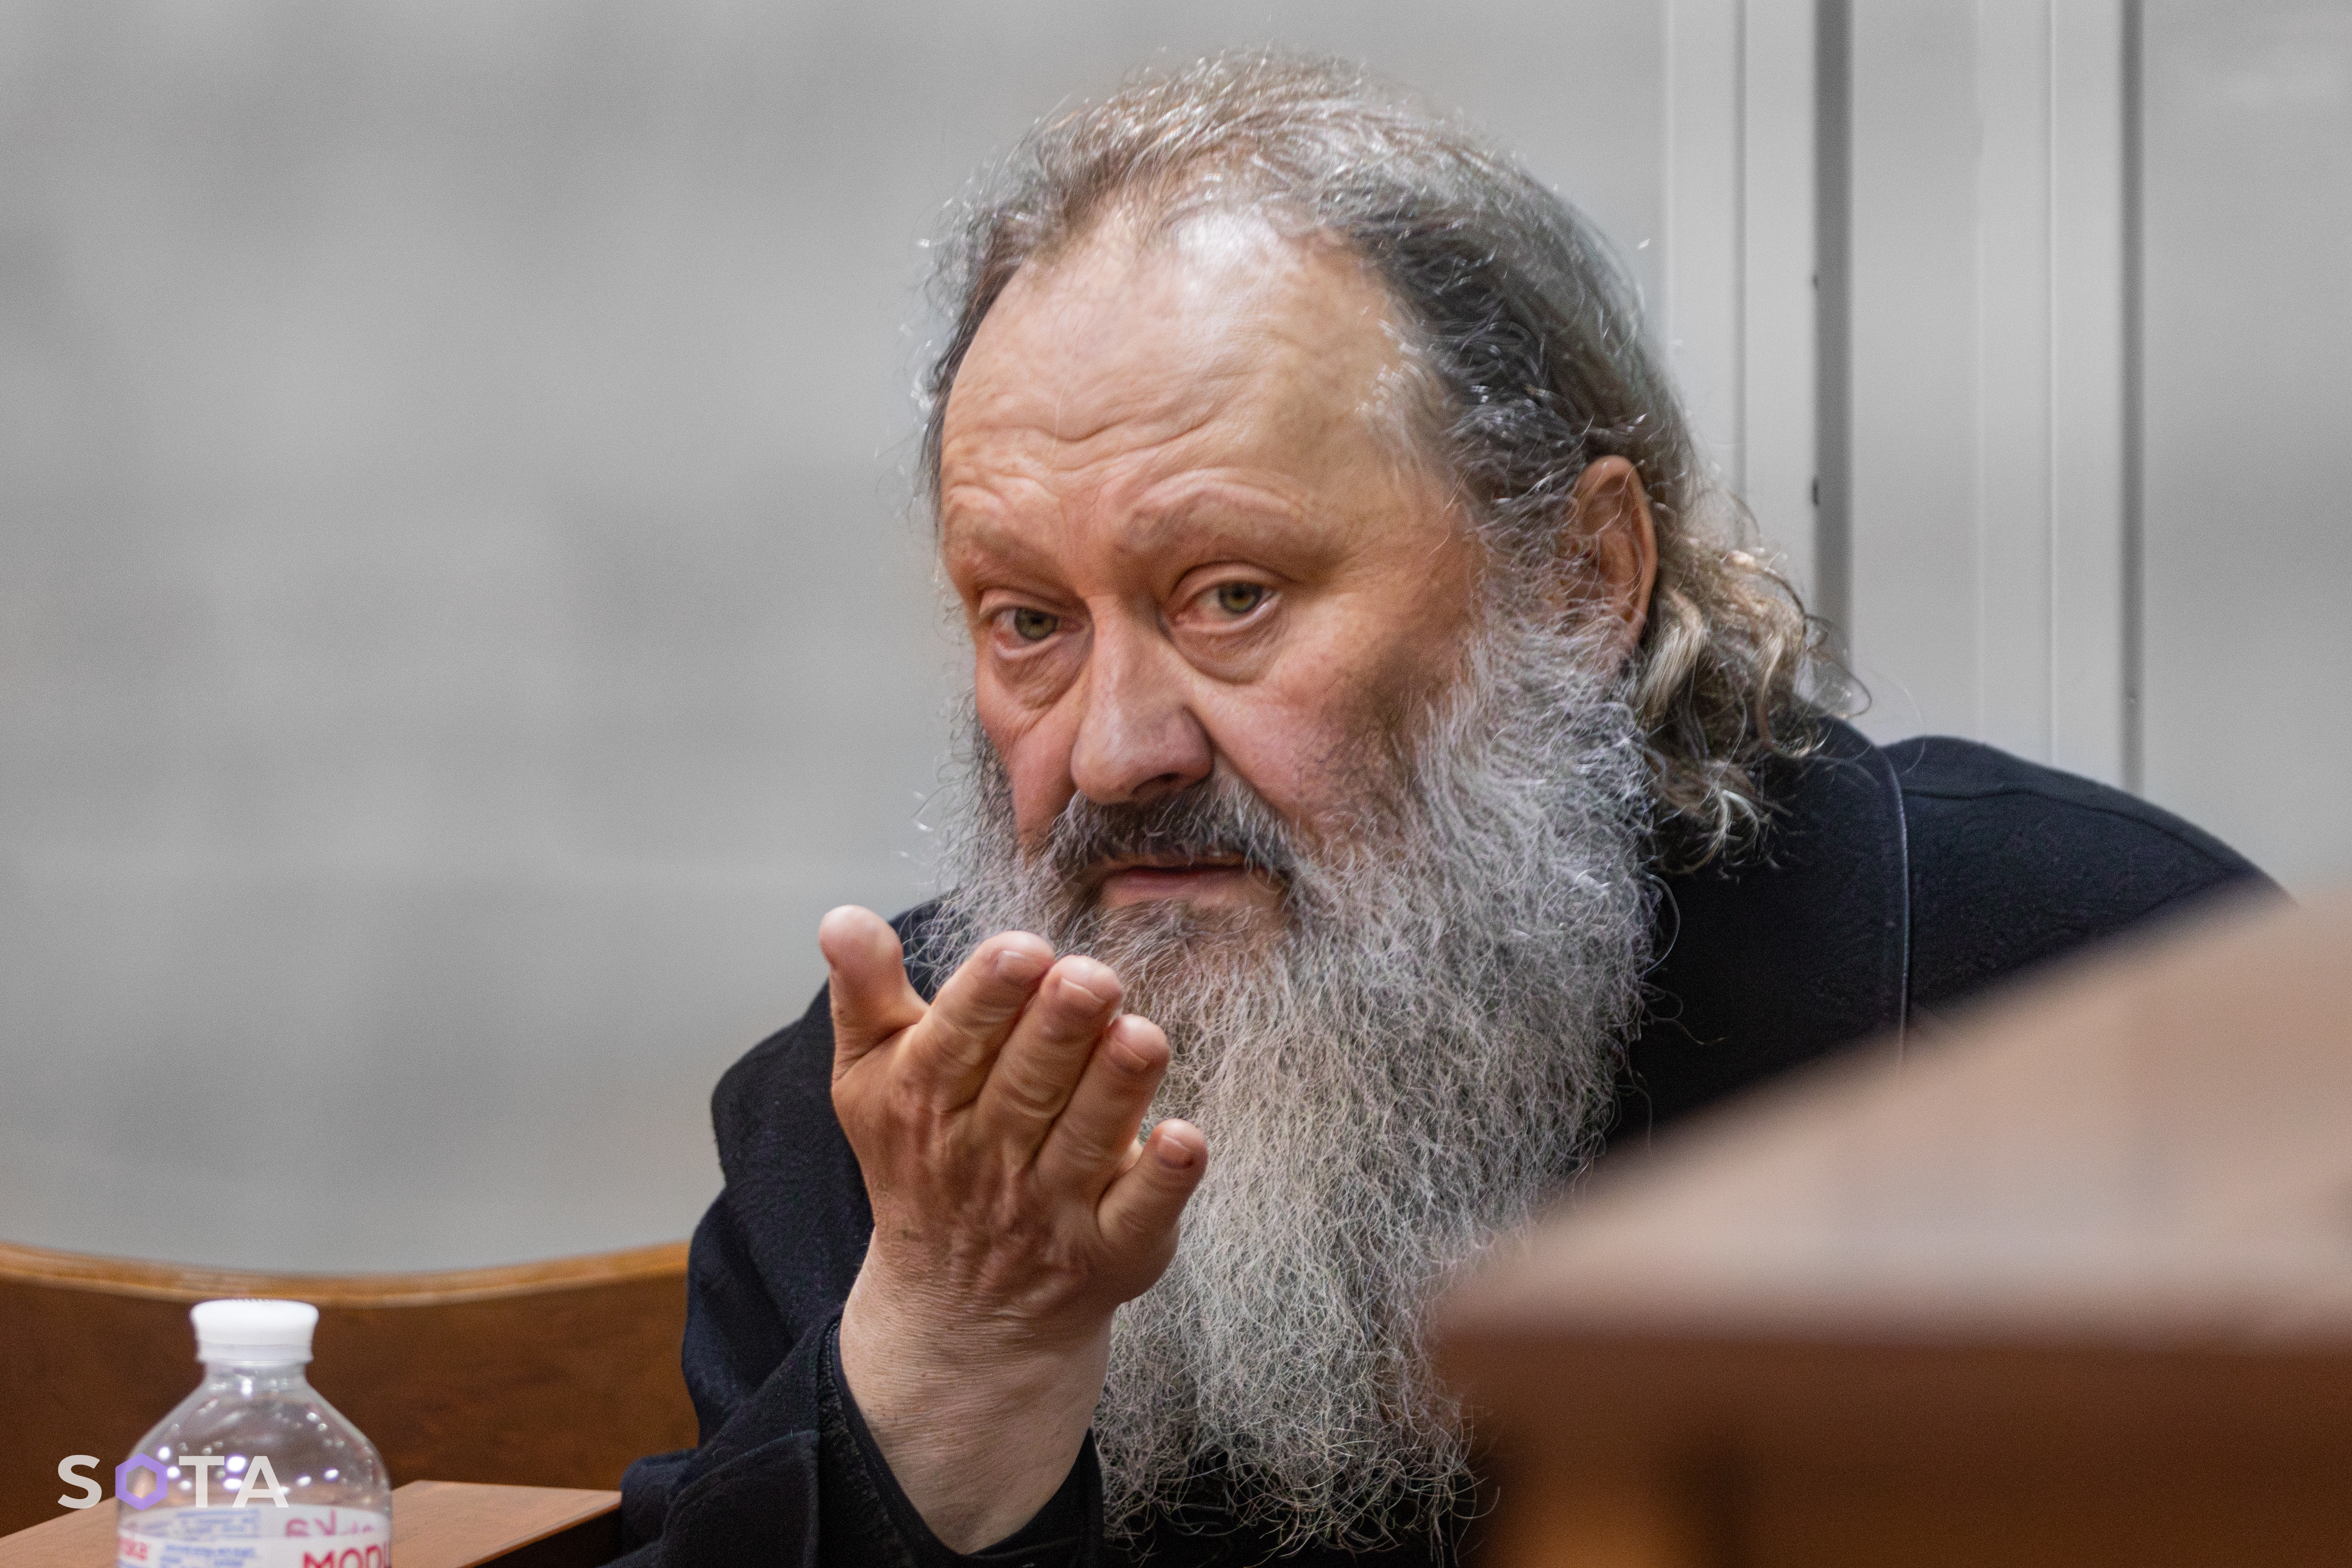 Митрополиит Павел Лебедь на заседании суда.
Фото: SOTA